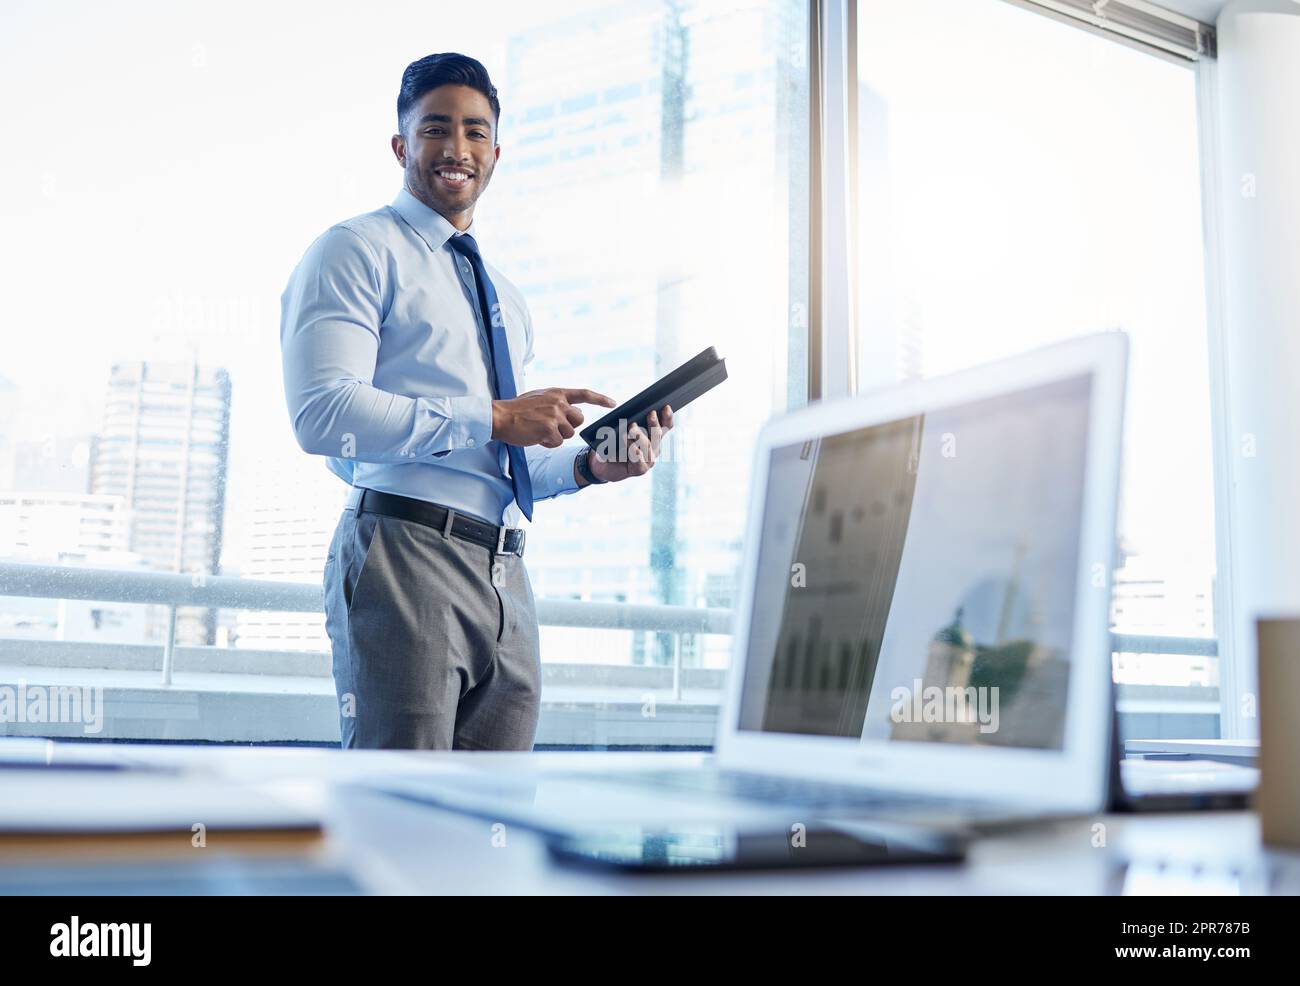 Profitez dès maintenant des opportunités infinies sur le marché. Photo d'un homme d'affaires utilisant une tablette numérique dans son bureau. Banque D'Images